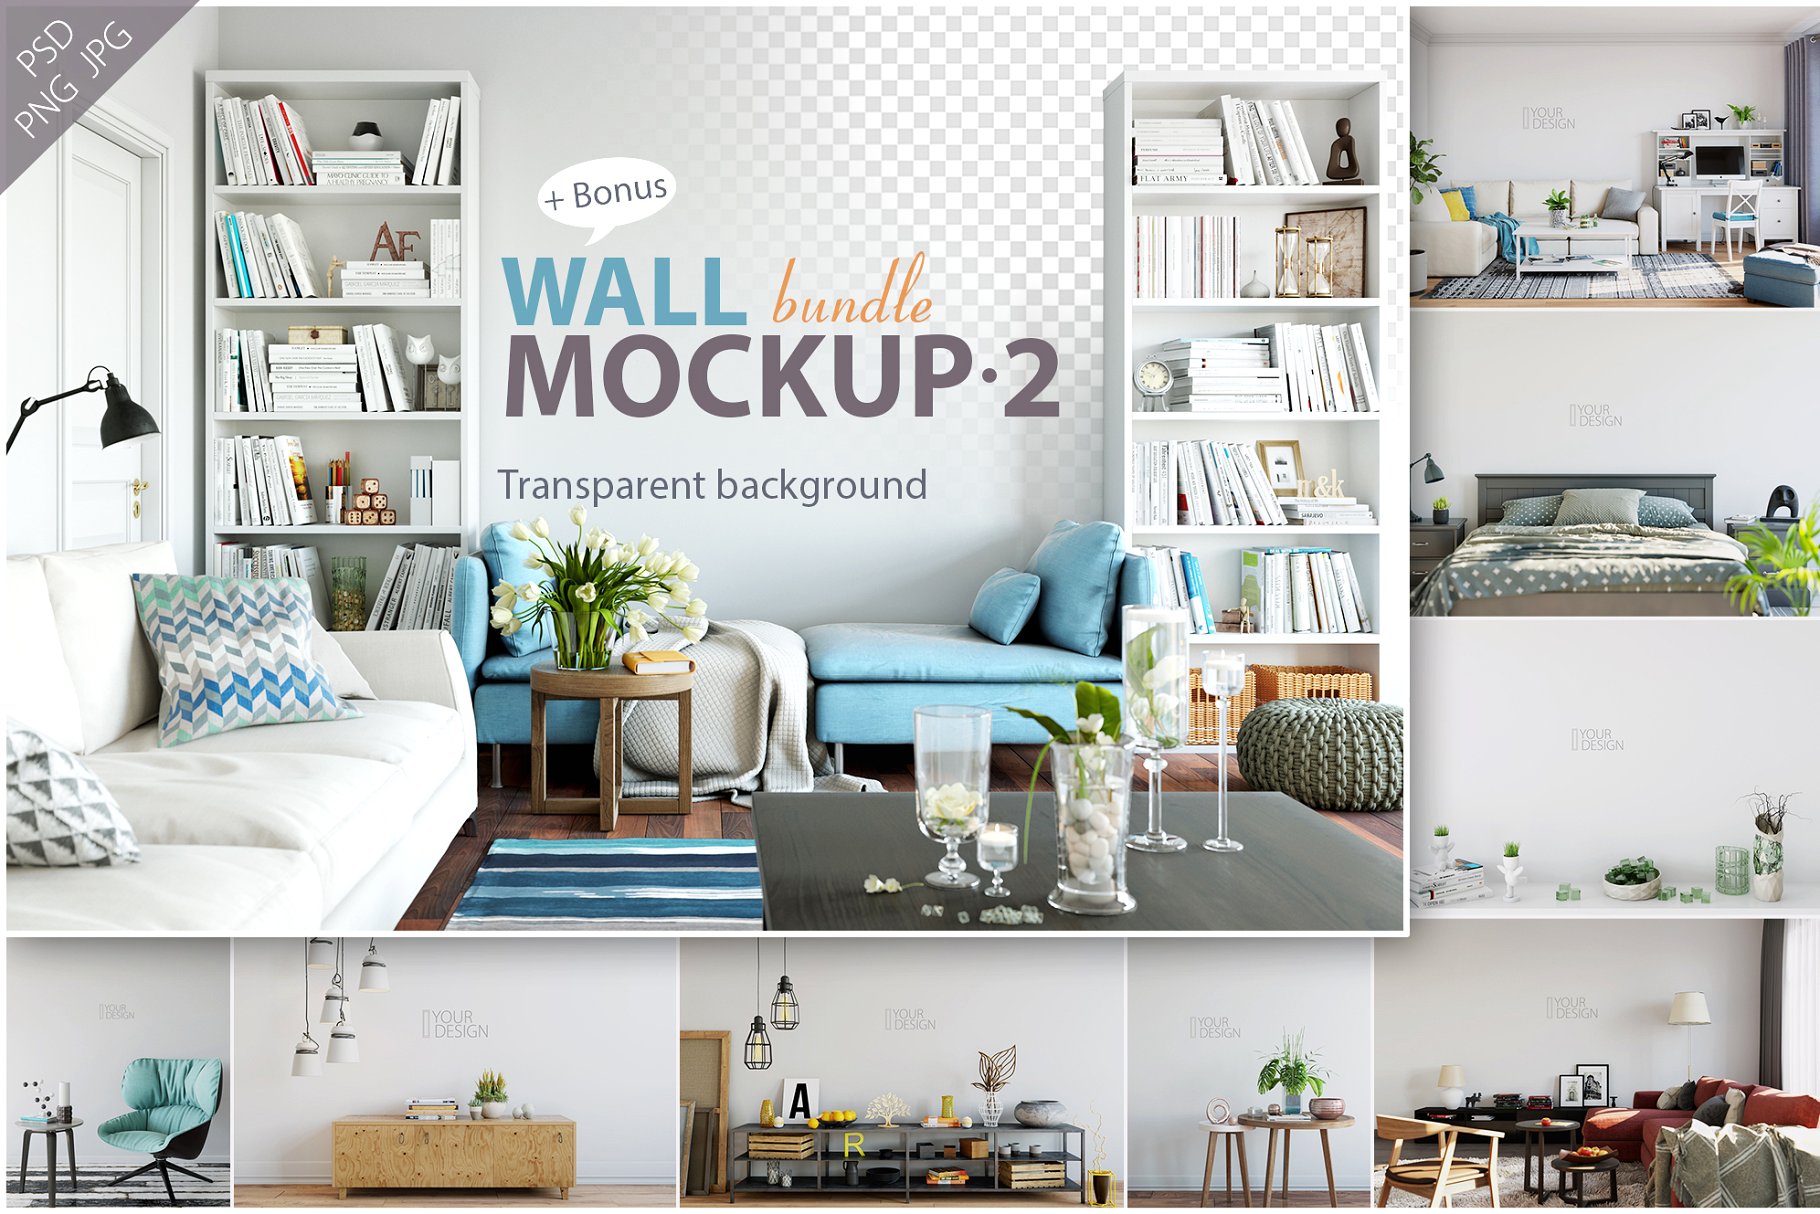 客厅卧室墙纸&相框画框样机模板合集 Interior Wall & Frames Mockup – 2插图